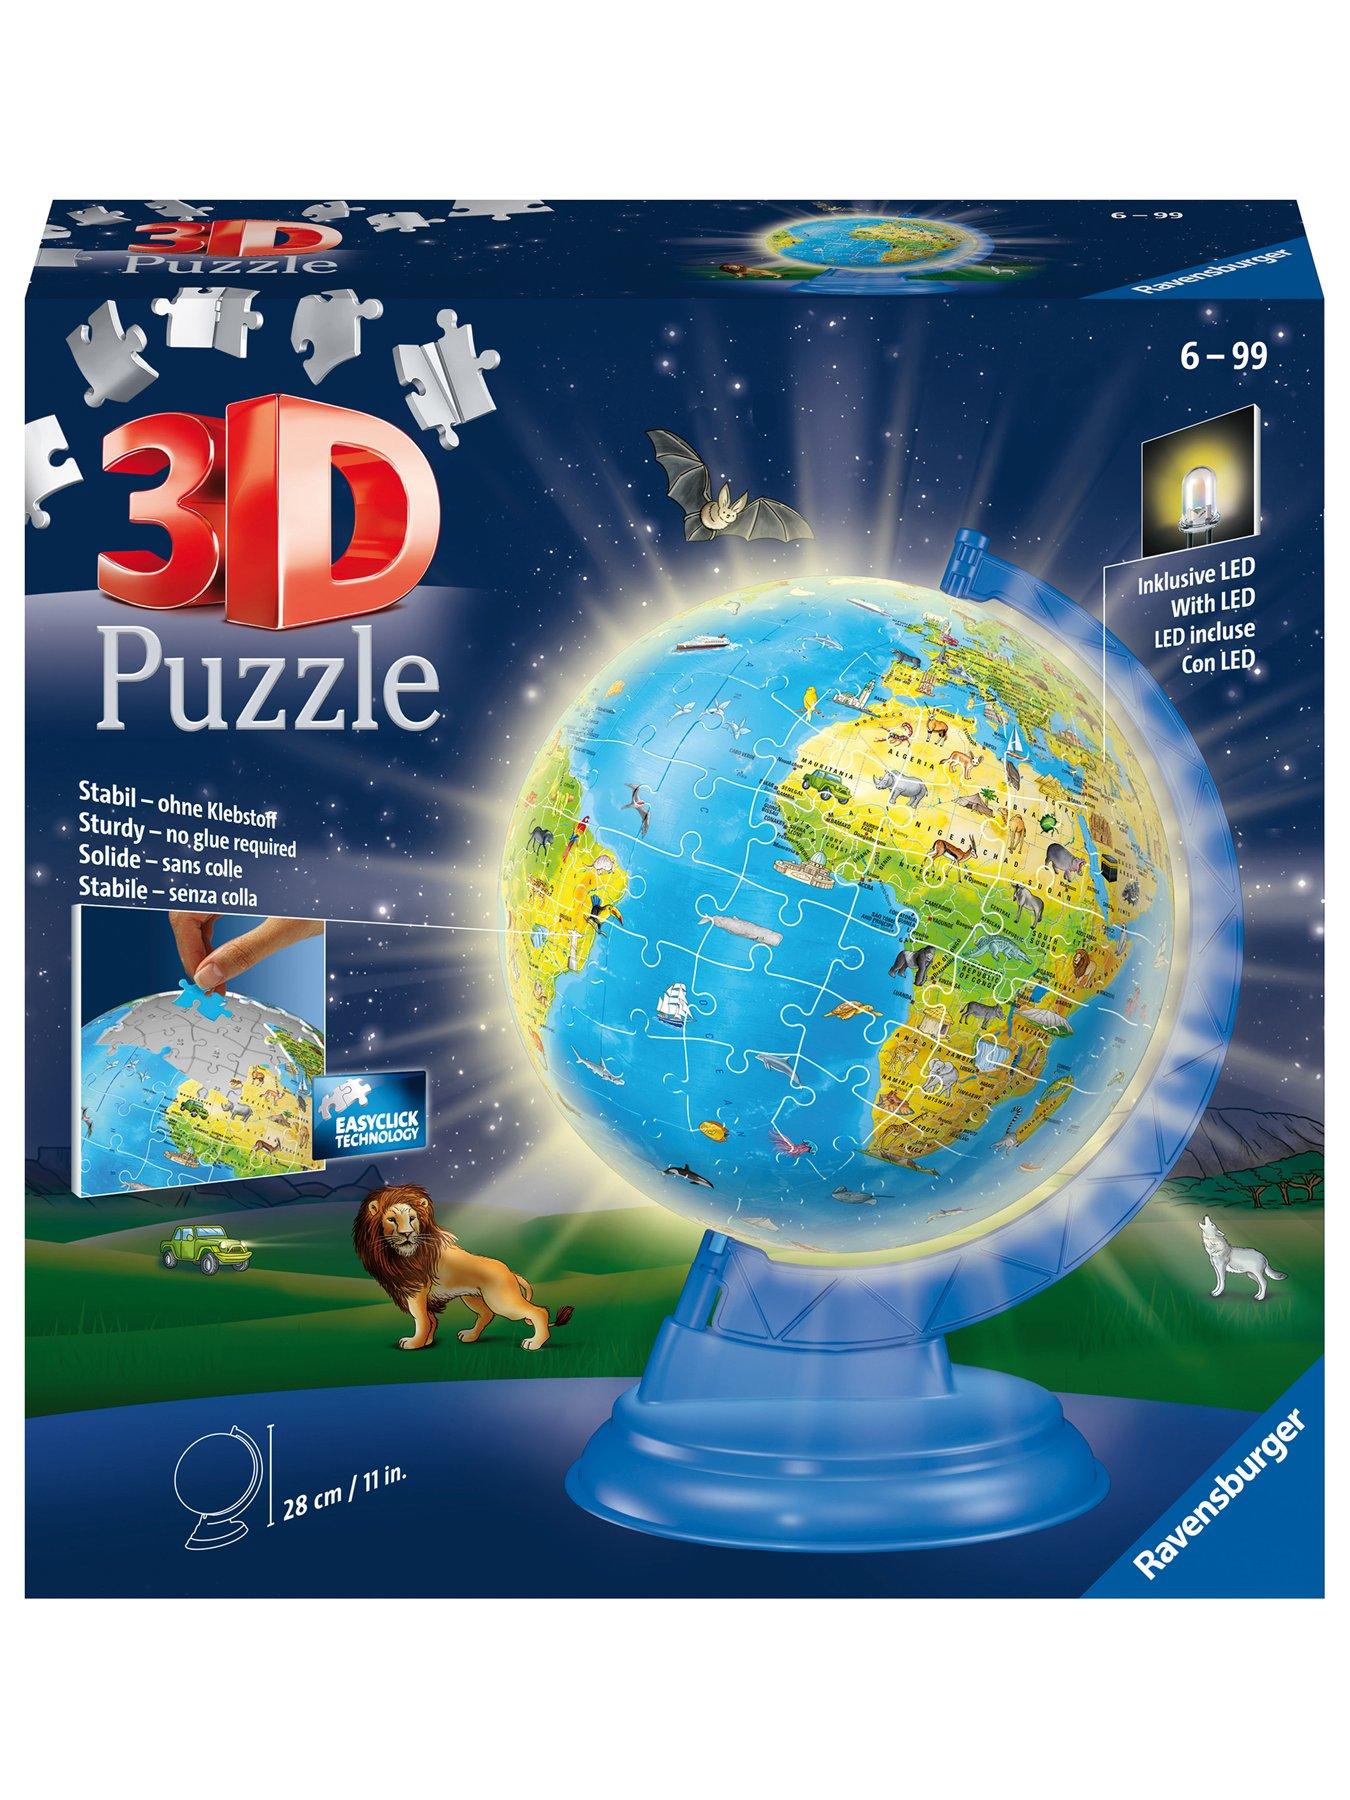 Ravensburger Light Up Children's World Globe, 180 piece 3D Jigsaw Puzzle